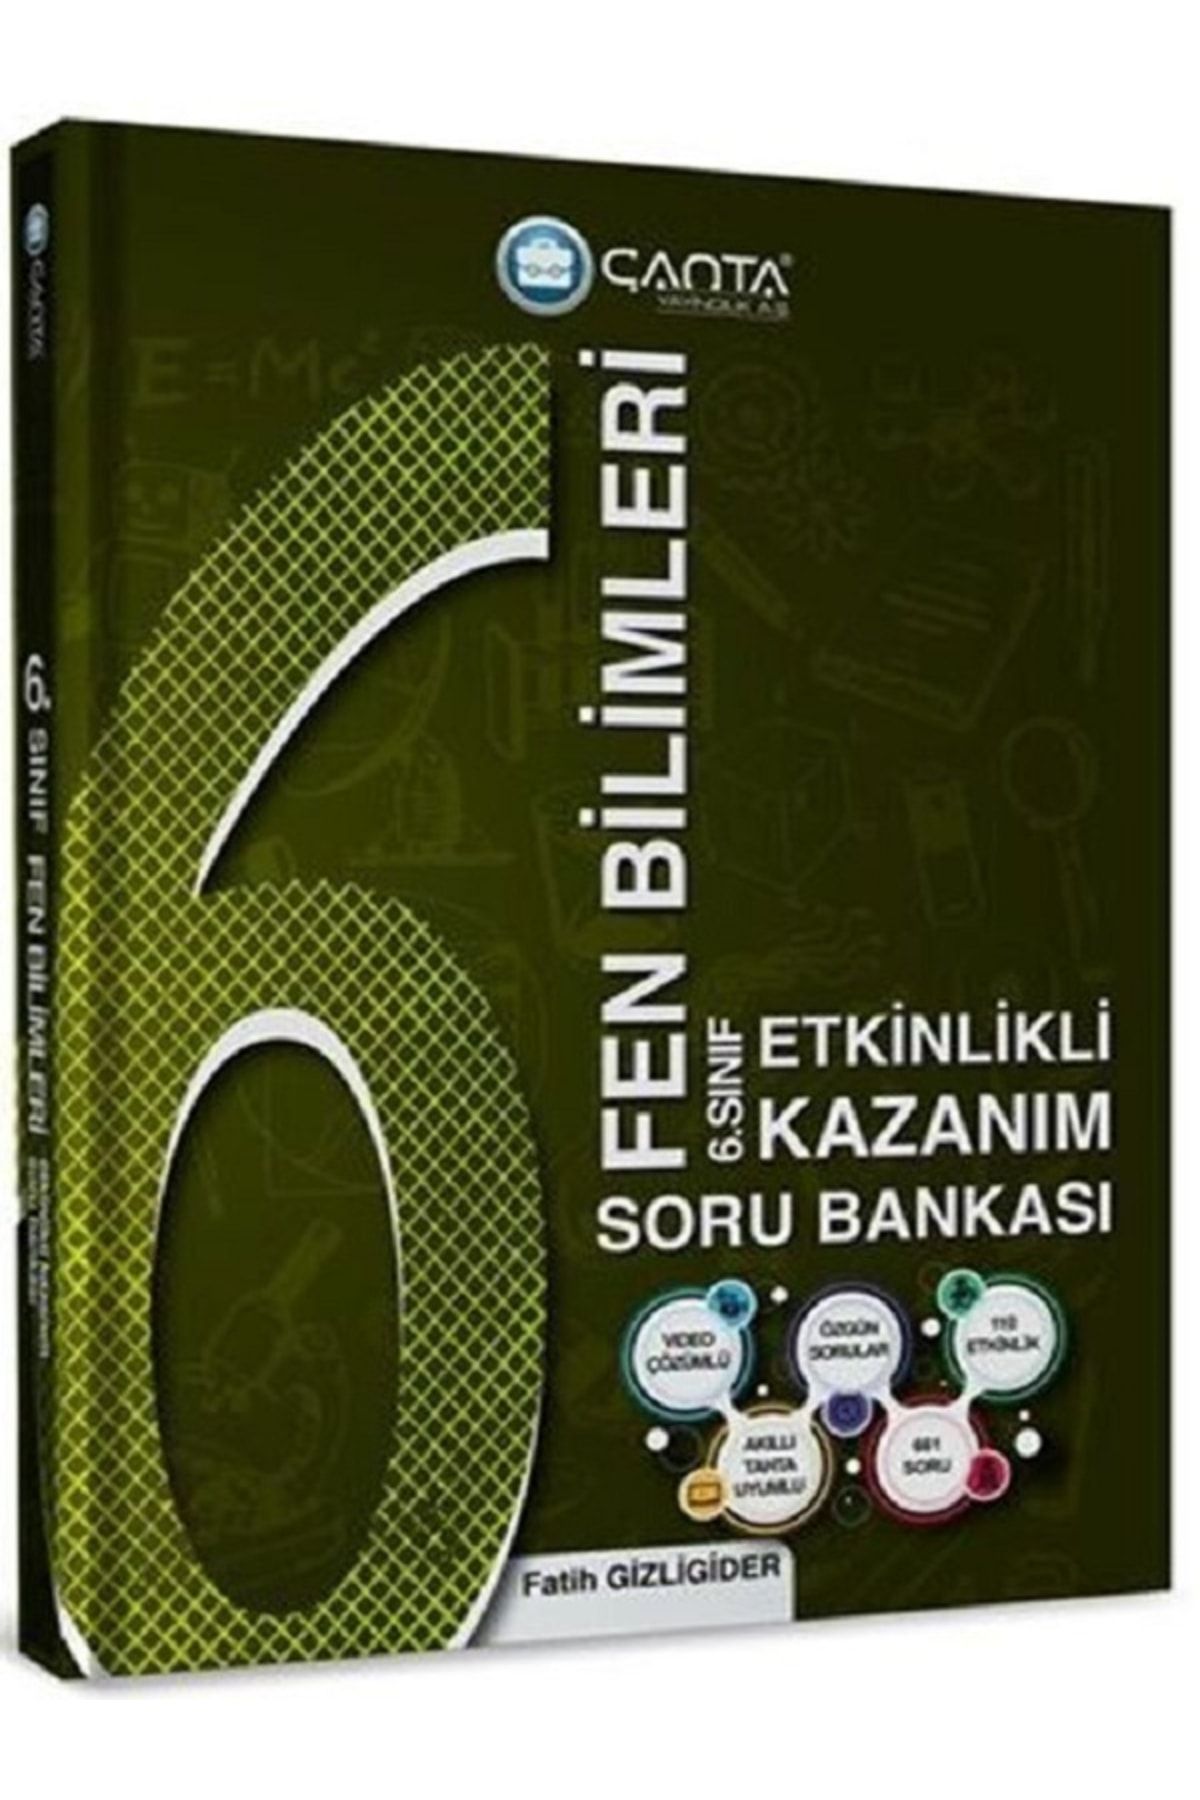 Çanta Yayınları 6. Sınıf Fen Bilimleri Etkinlikli Kazanım Soru Bankası